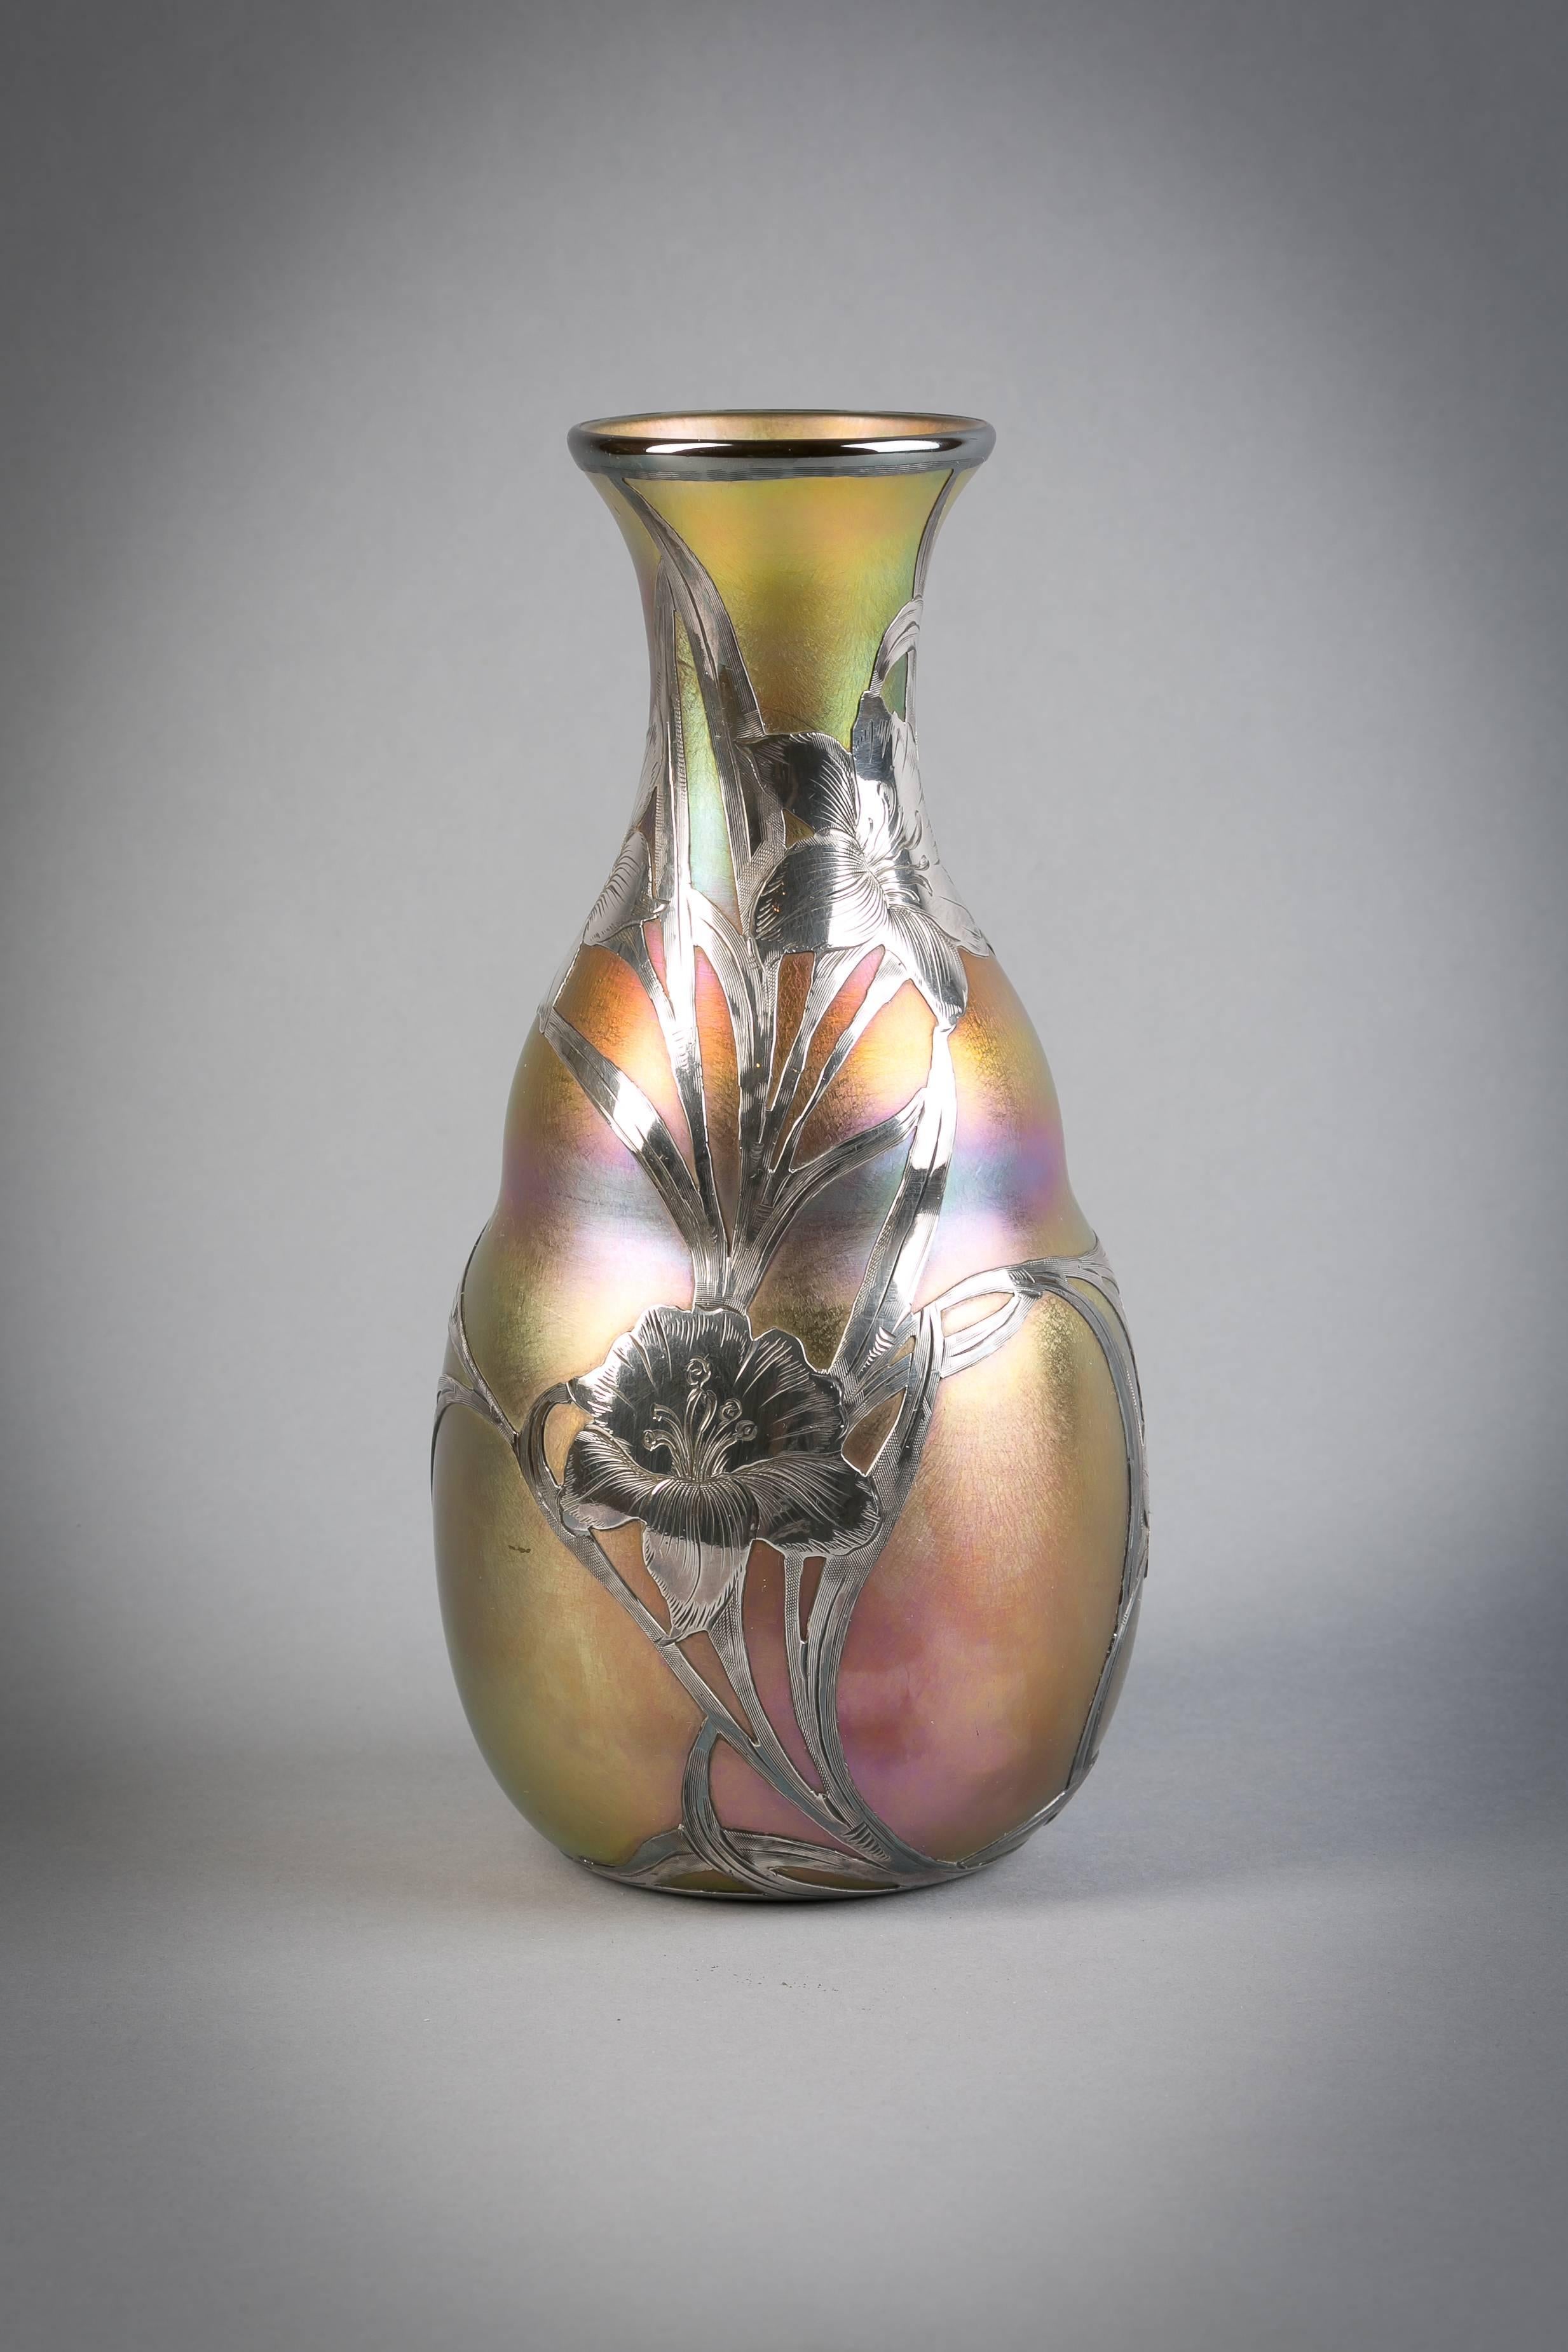 Vase mit Silberauflage, Quezal, um 1900

Gezeichnet Quezal.